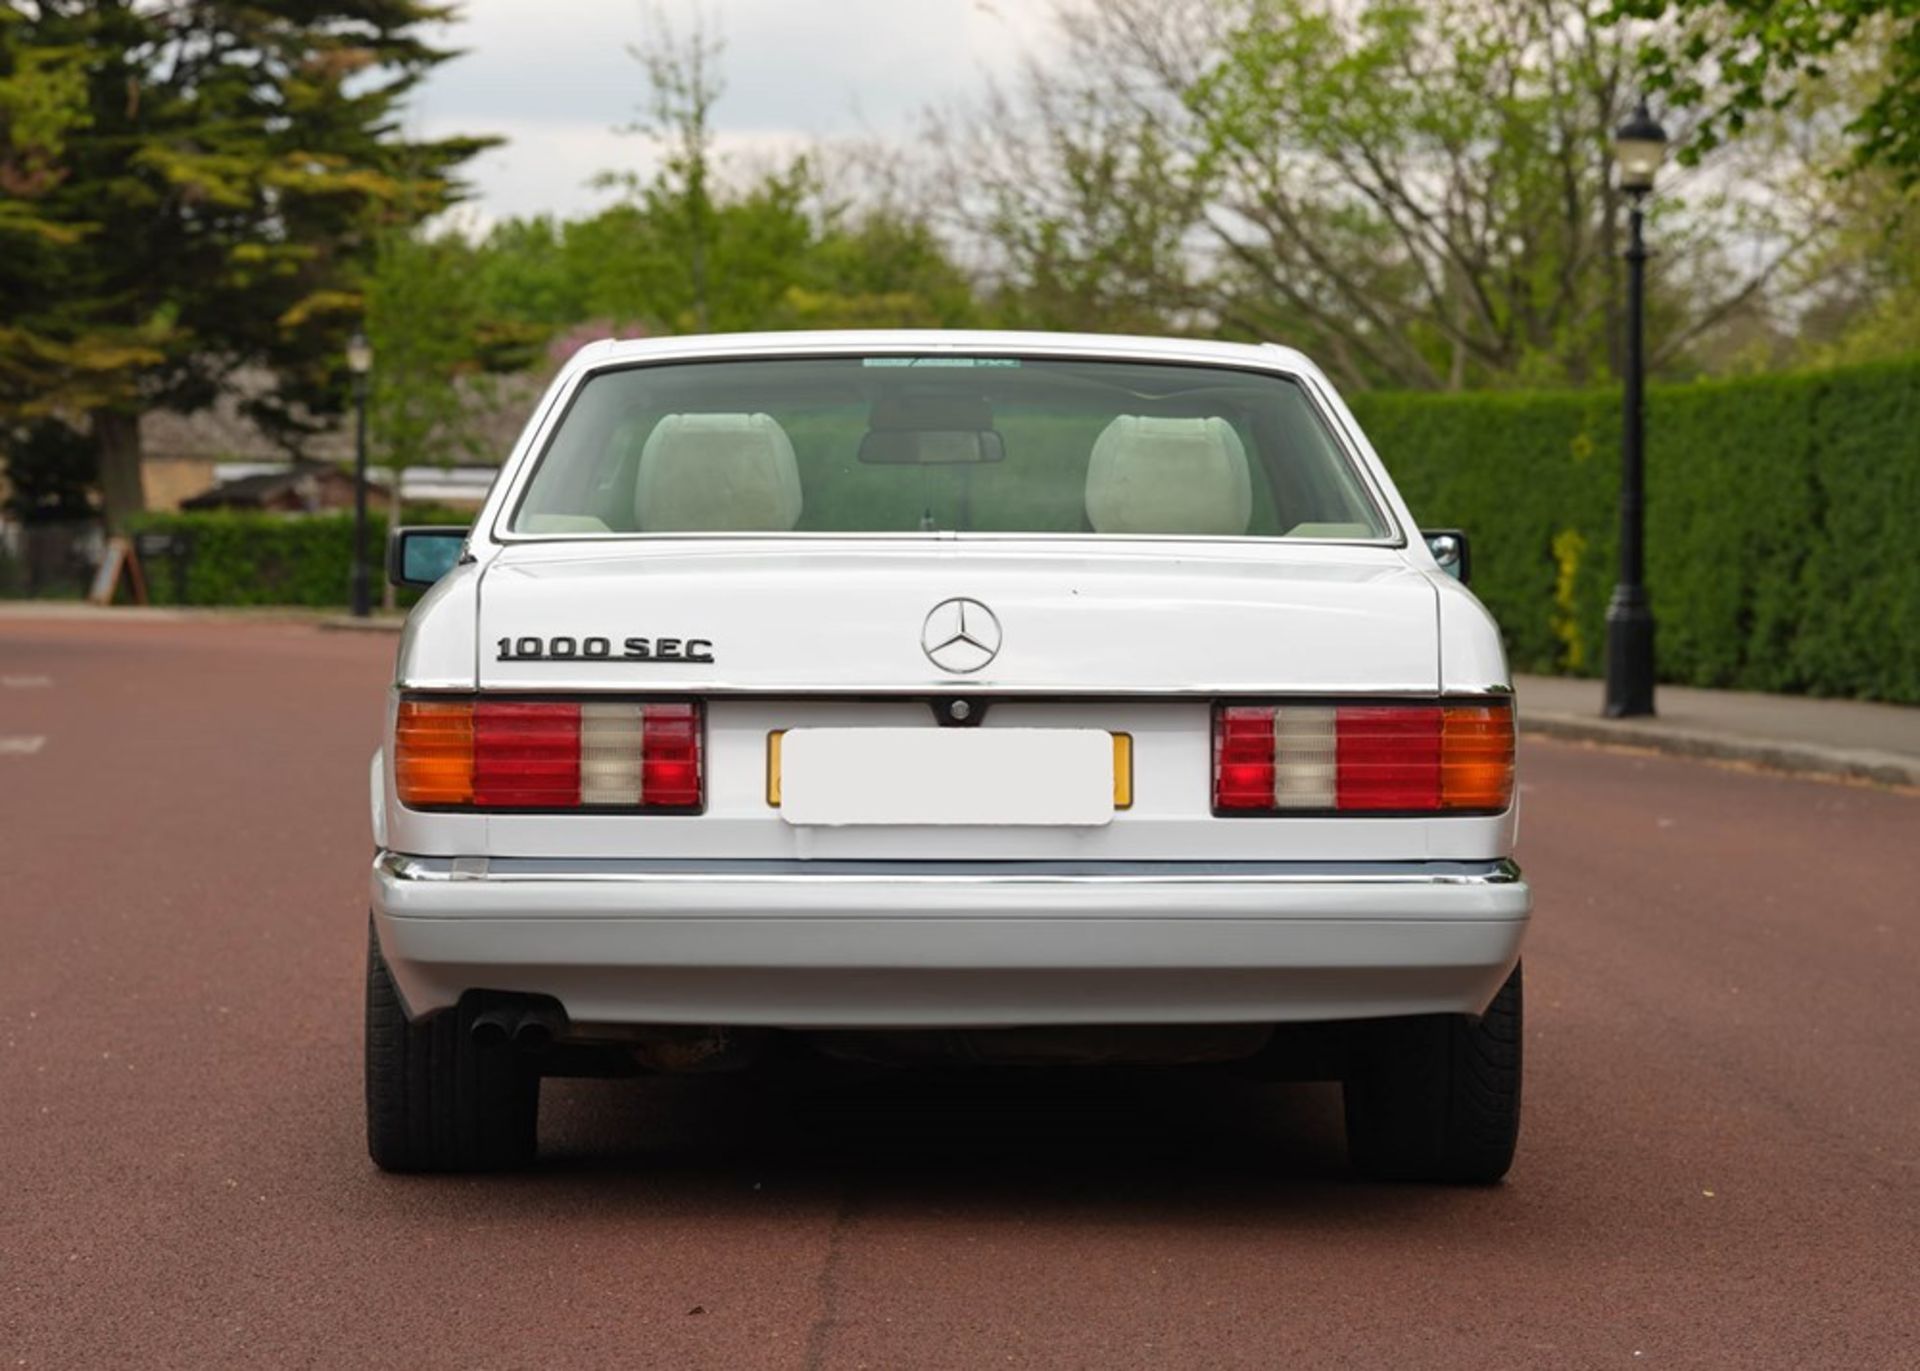 1990 Mercedes-Benz 1000/560 SEC - Image 2 of 9